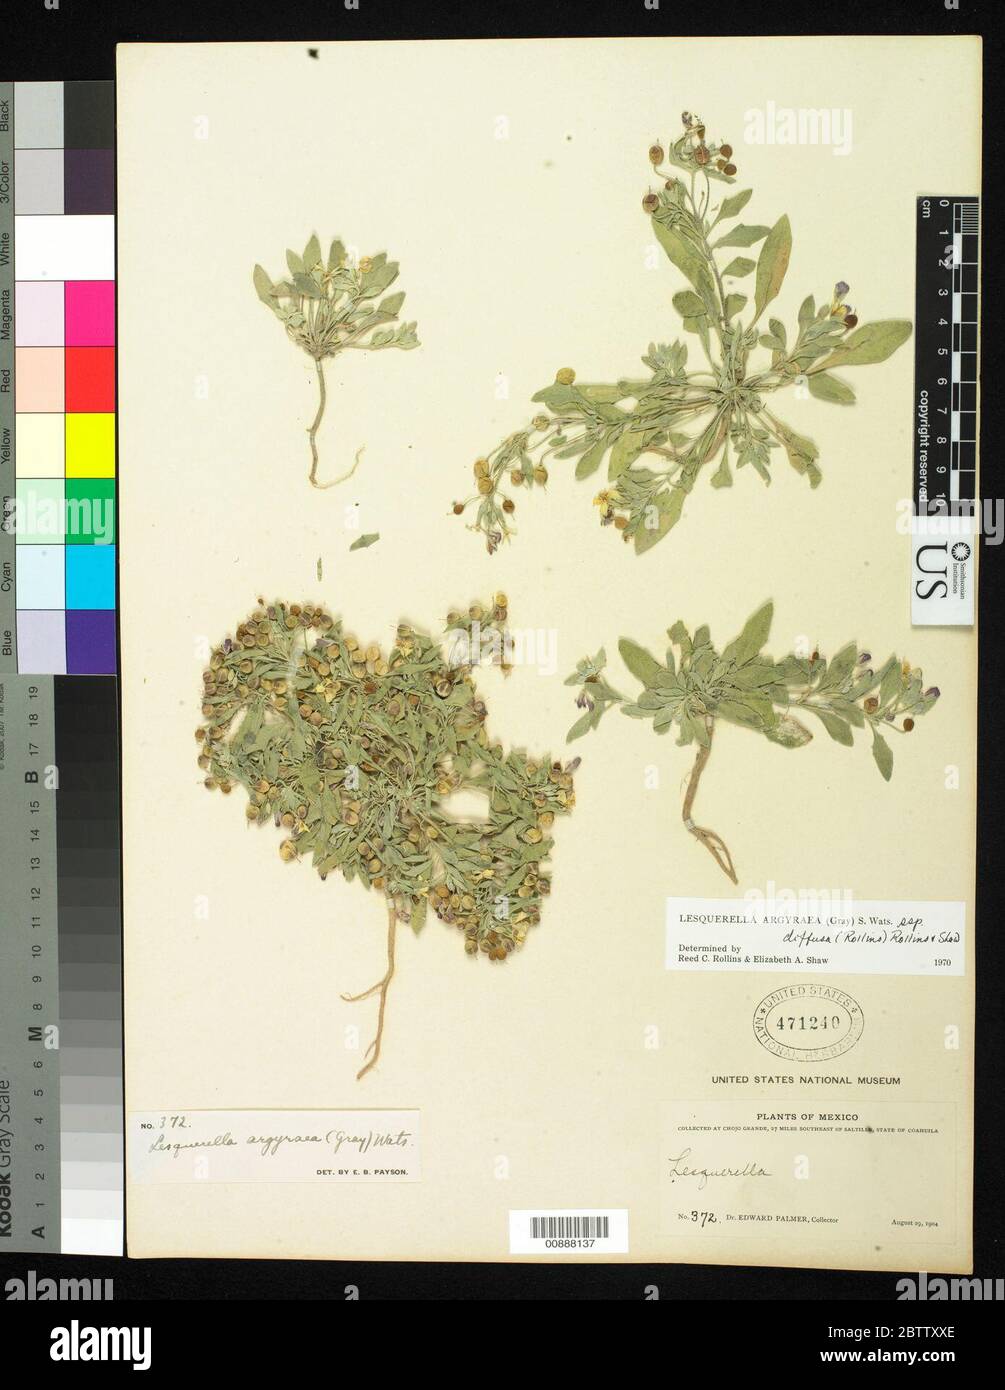 Lesquerella argyraea subsp diffusa. Stock Photo